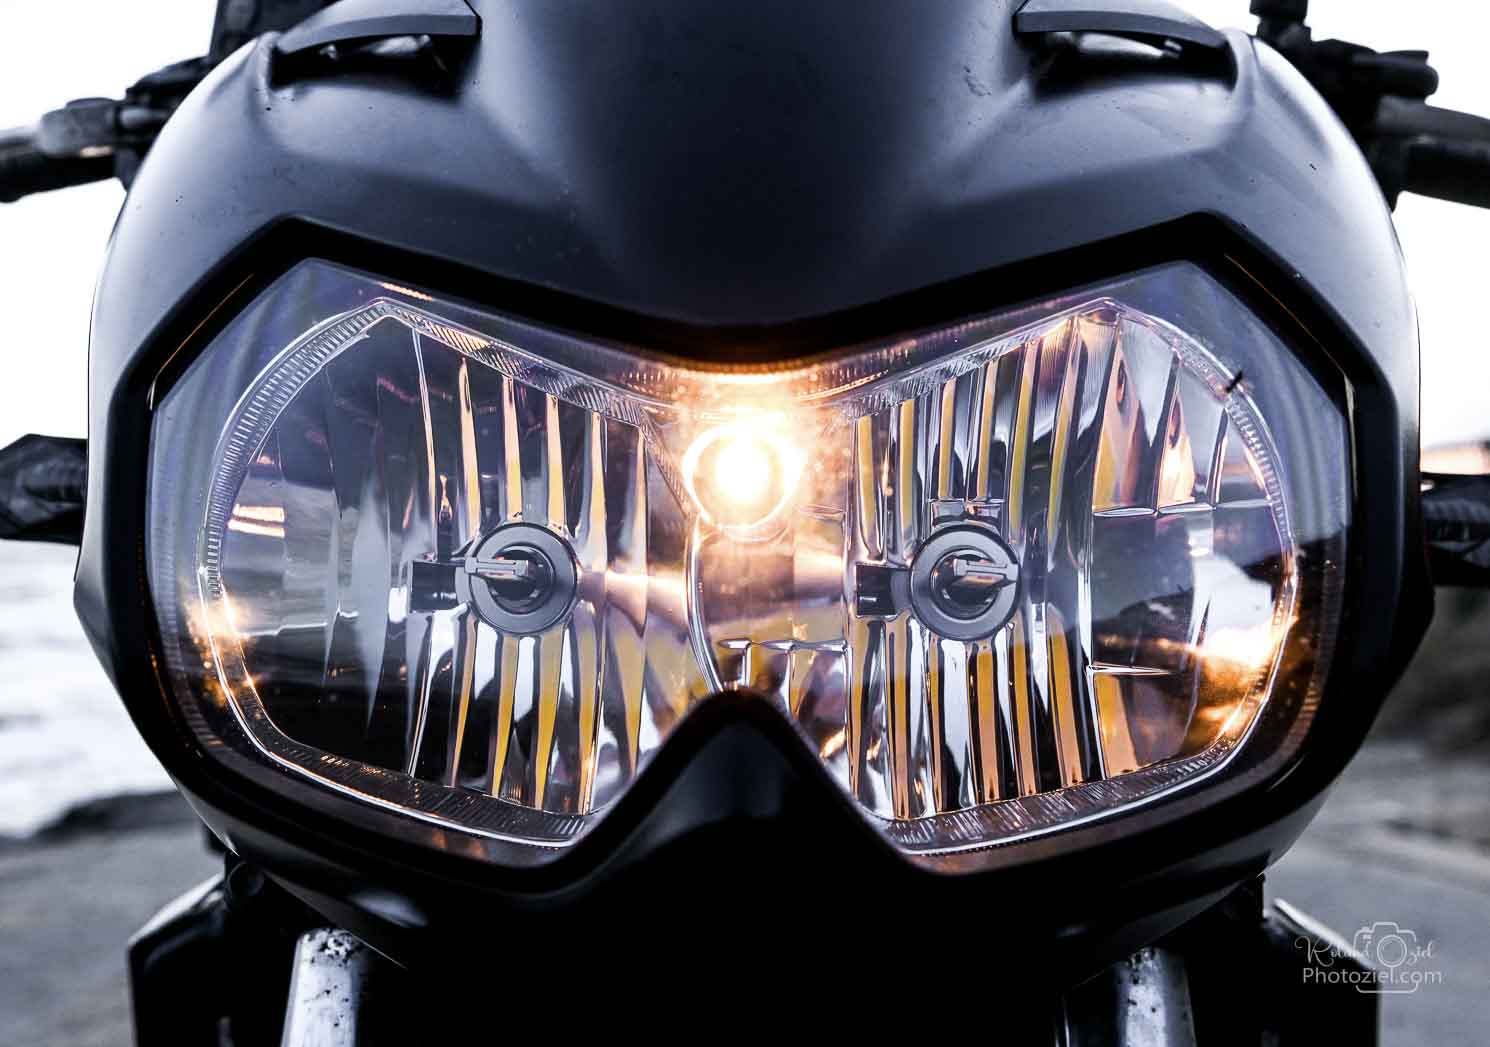 Photo des phares de la moto pendant le shooting